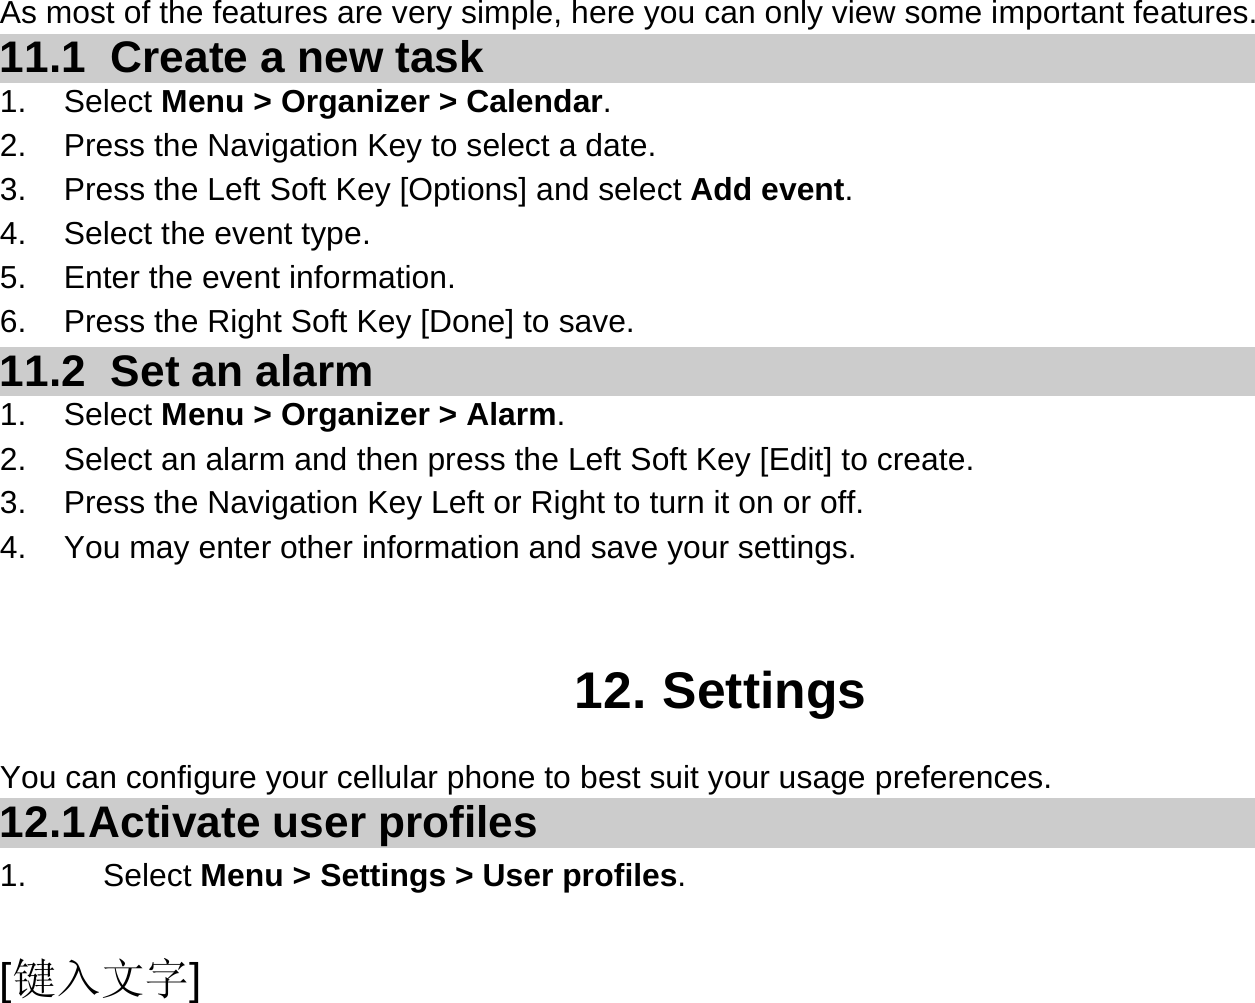  [键入文字] As most of the features are very simple, here you can only view some important features. 11.1   Create a new task 1. Select Menu &gt; Organizer &gt; Calendar. 2.  Press the Navigation Key to select a date. 3.  Press the Left Soft Key [Options] and select Add event. 4.  Select the event type. 5.  Enter the event information. 6.  Press the Right Soft Key [Done] to save. 11.2   Set an alarm 1. Select Menu &gt; Organizer &gt; Alarm. 2.  Select an alarm and then press the Left Soft Key [Edit] to create. 3.  Press the Navigation Key Left or Right to turn it on or off. 4.  You may enter other information and save your settings.   12. Settings You can configure your cellular phone to best suit your usage preferences. 12.1 Activate  user  profiles 1.   Select Menu &gt; Settings &gt; User profiles. 